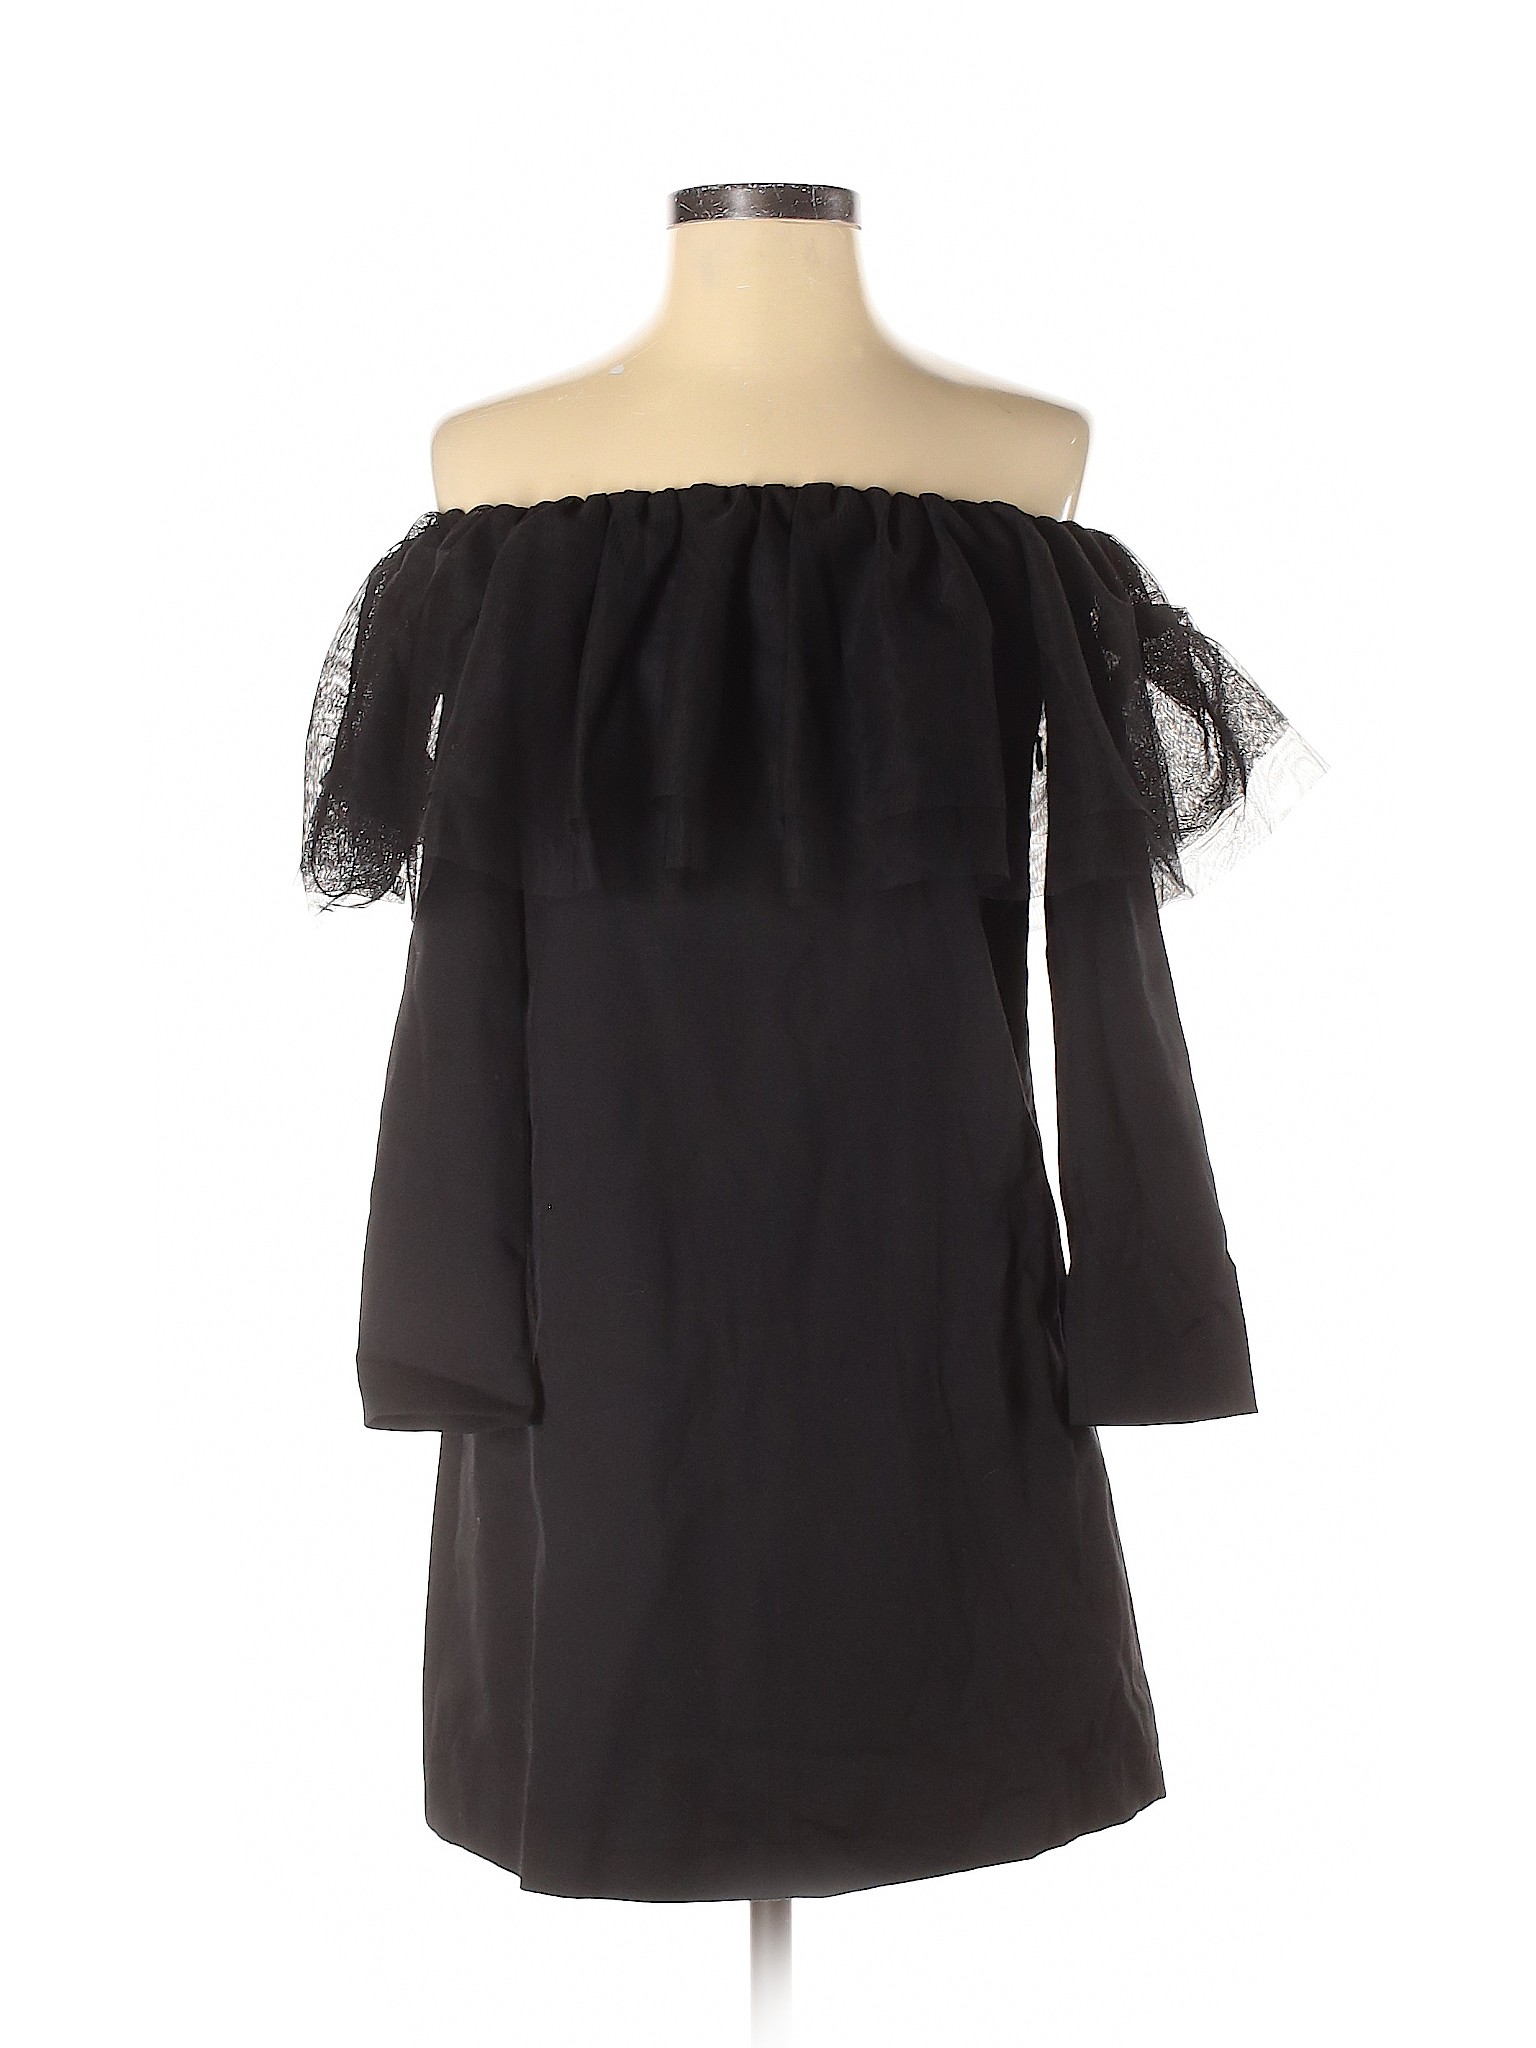 NWT Trafaluc by Zara Women Black Cocktail Dress M | eBay